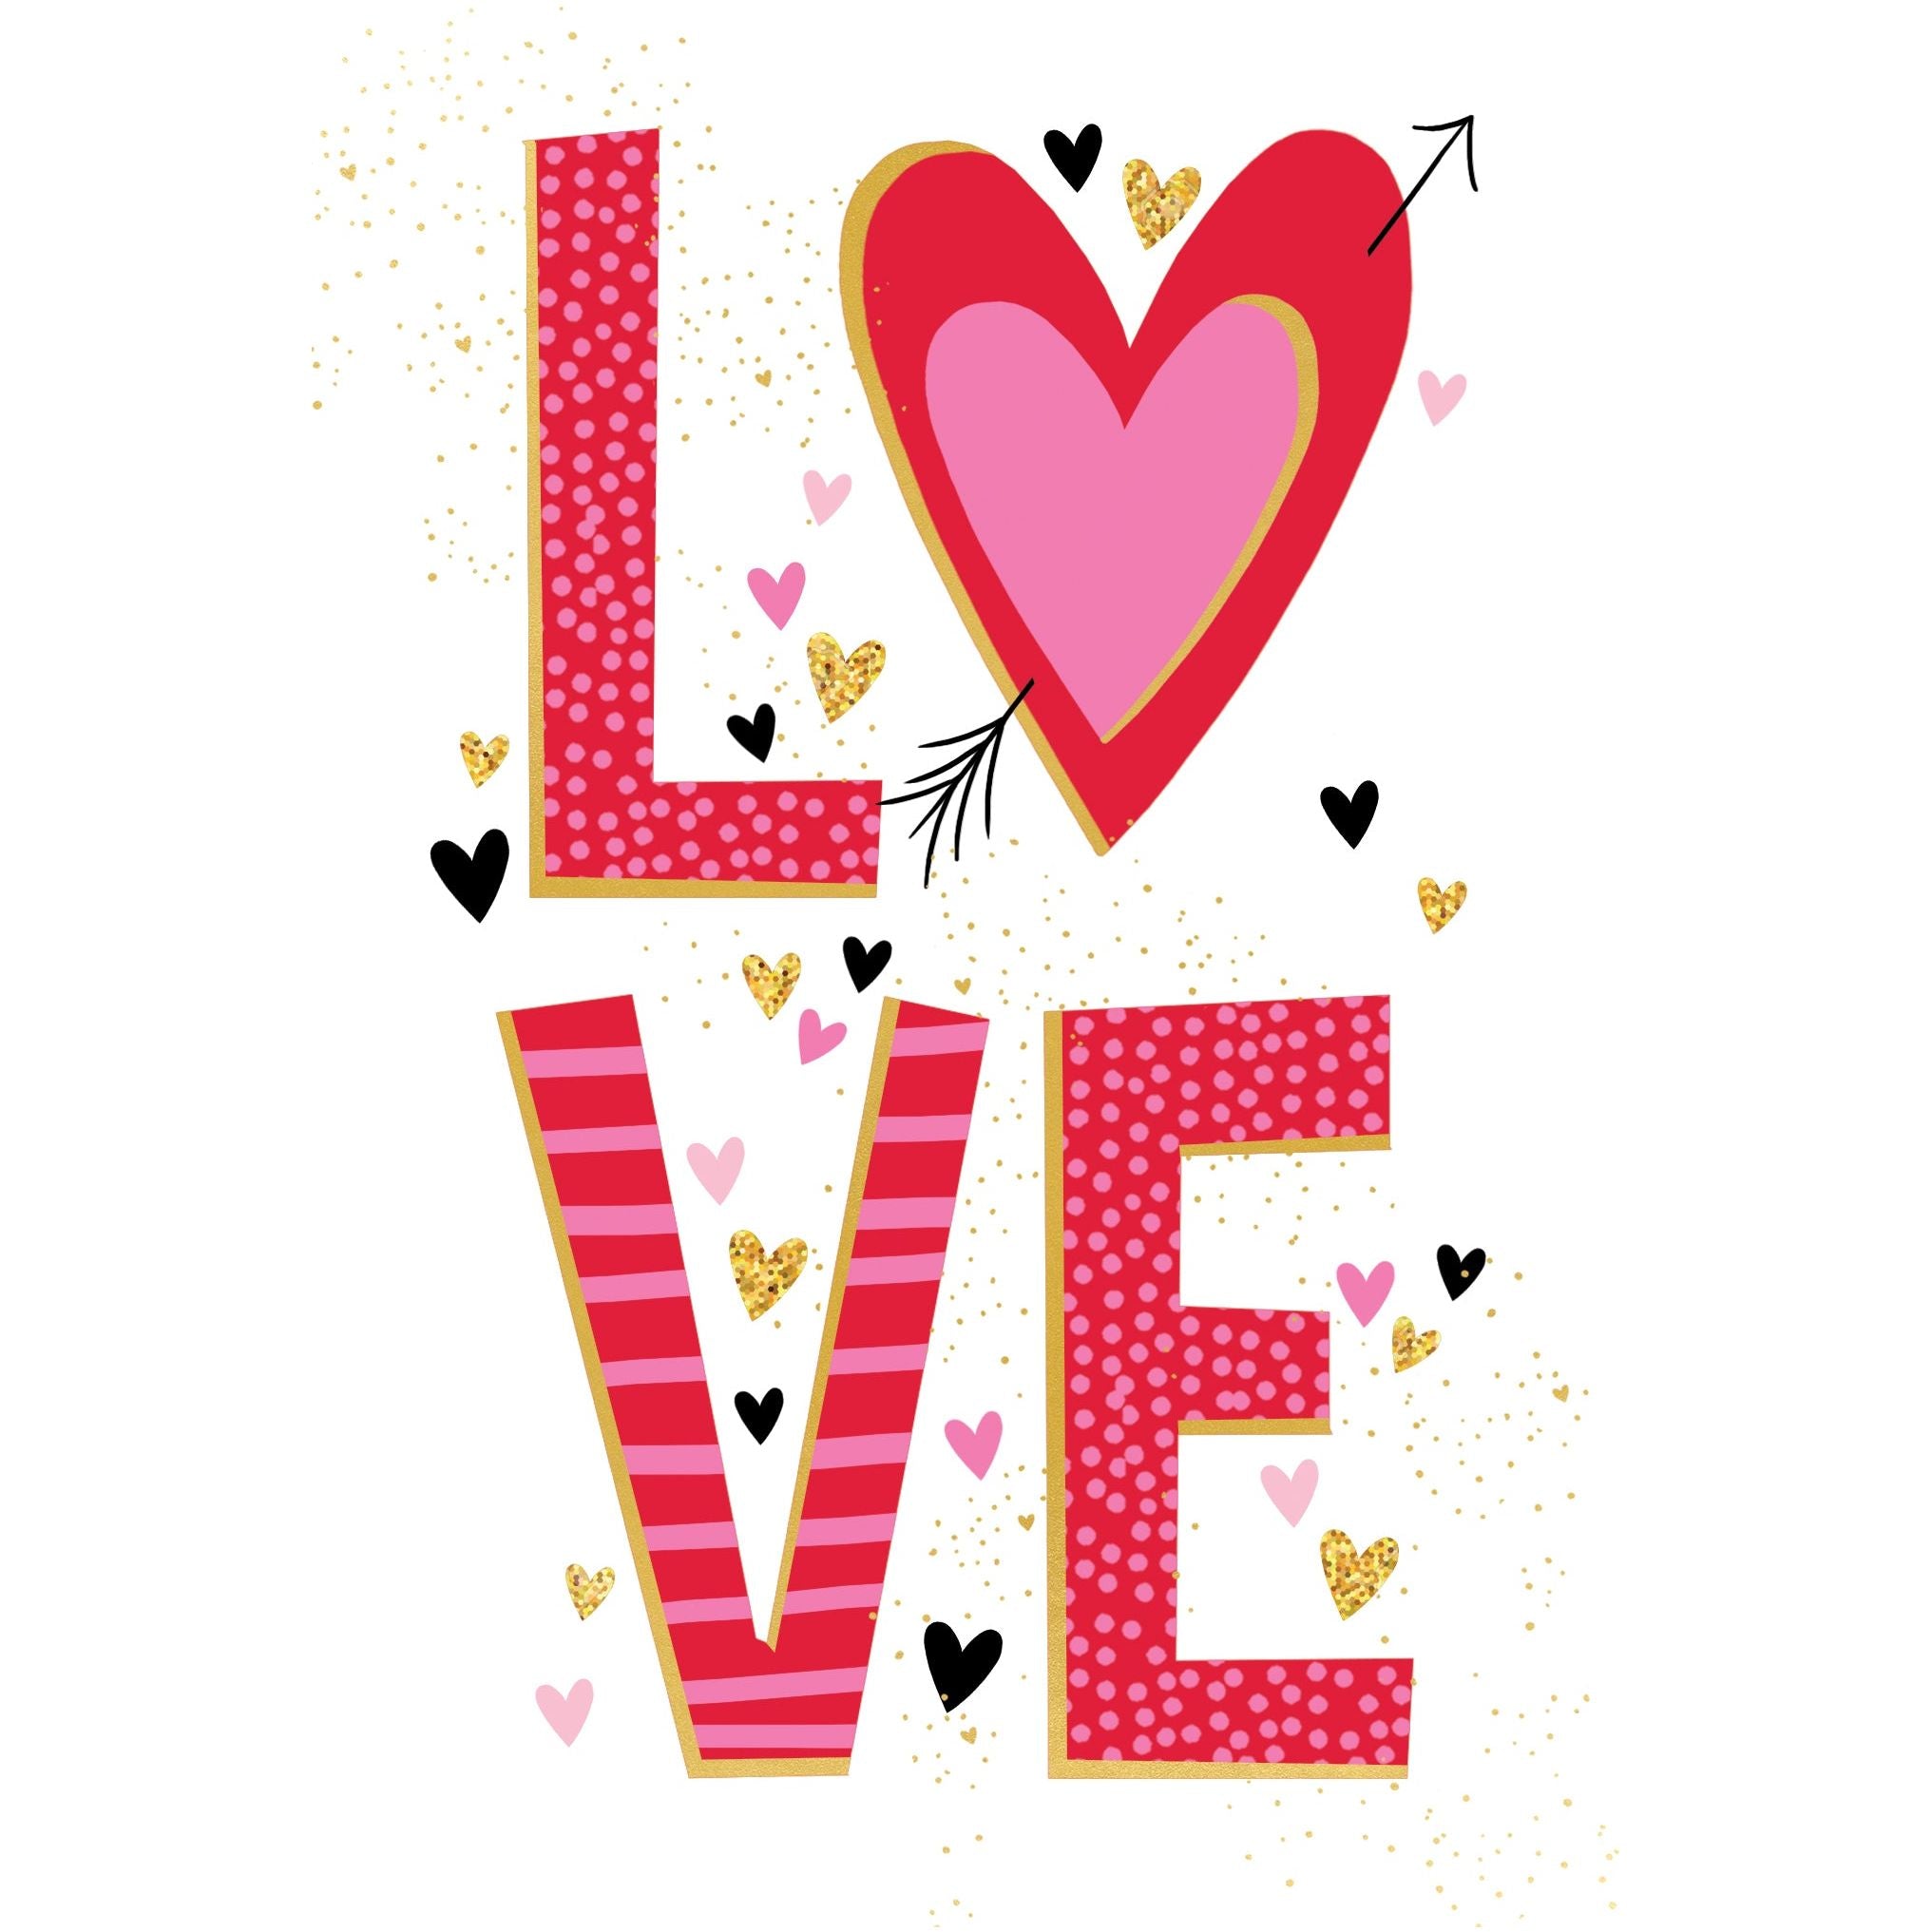 LOVE Valentine's Day Card